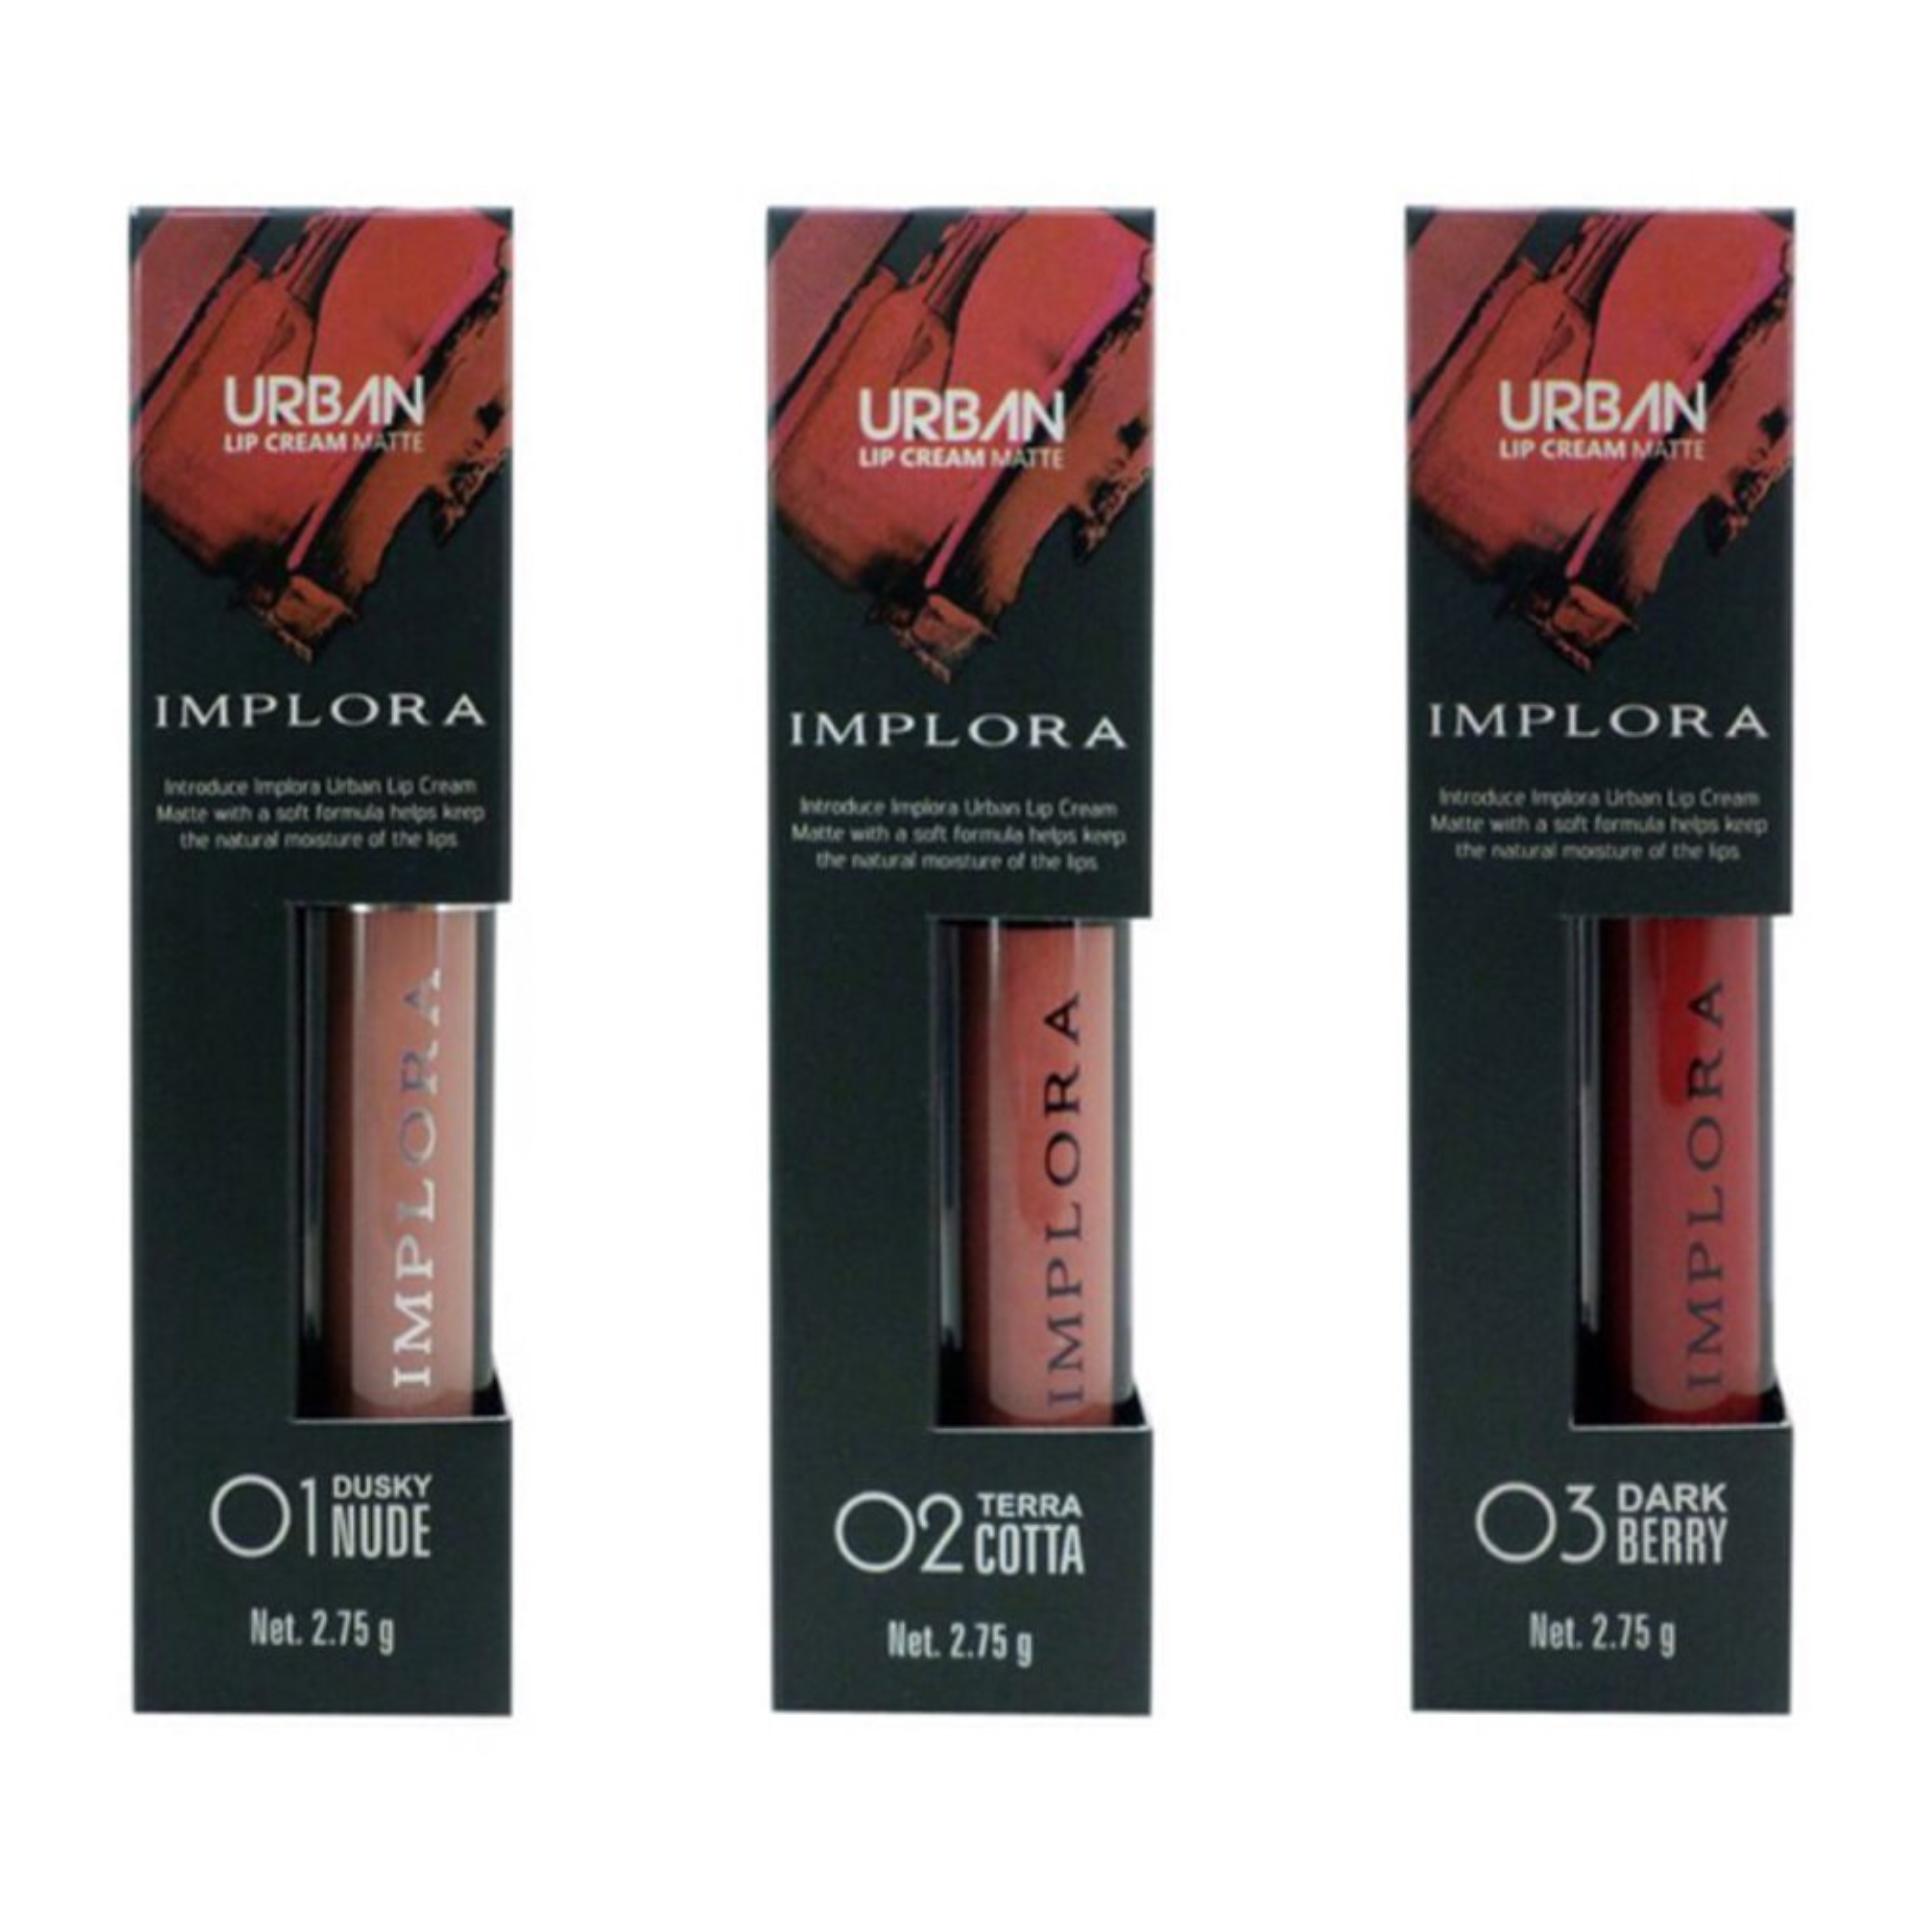 Lipstick Urban Implora | Julakutuhy.co